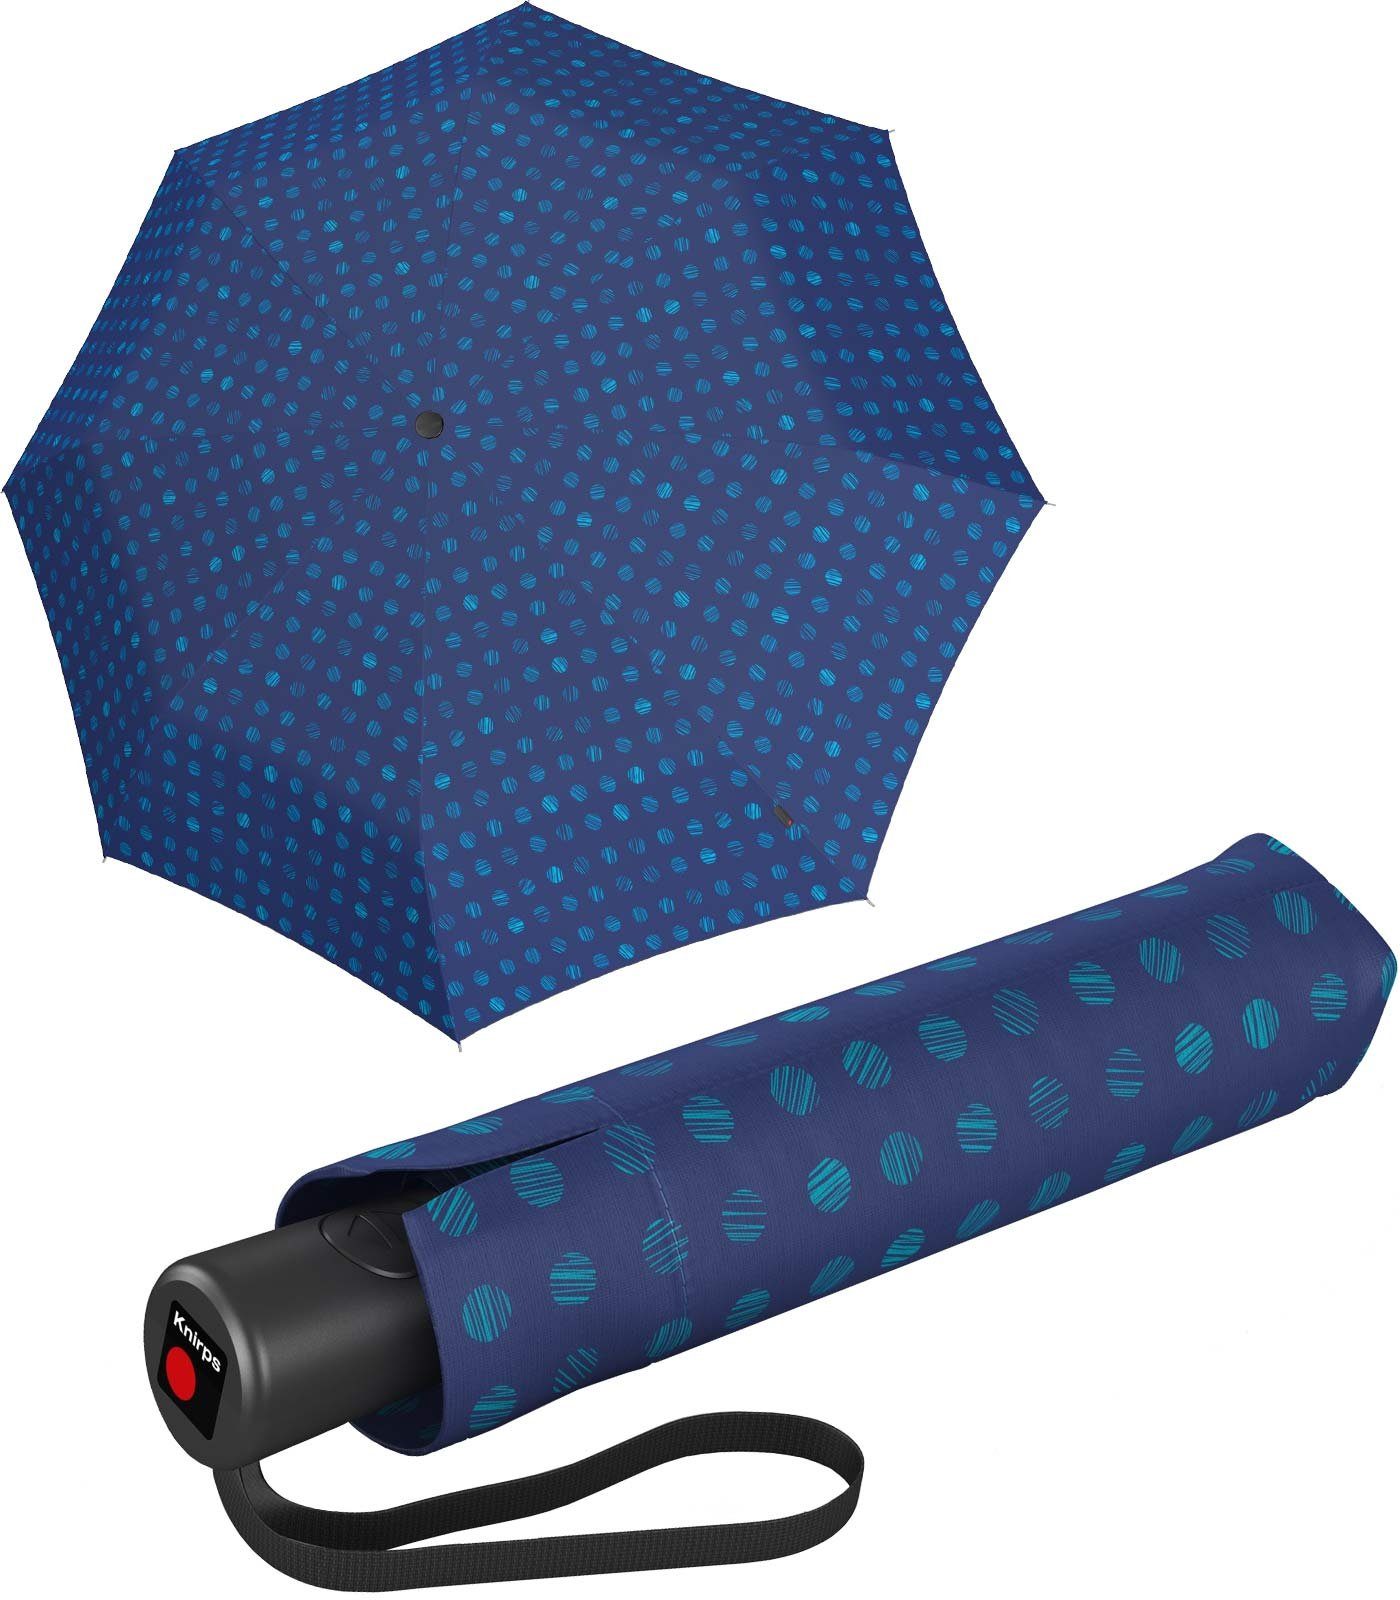 seine Taschenregenschirm mit stabiler besonders Auf-Zu-Automatik, Knirps® Schirm blau durch Automatik großer, praktisch